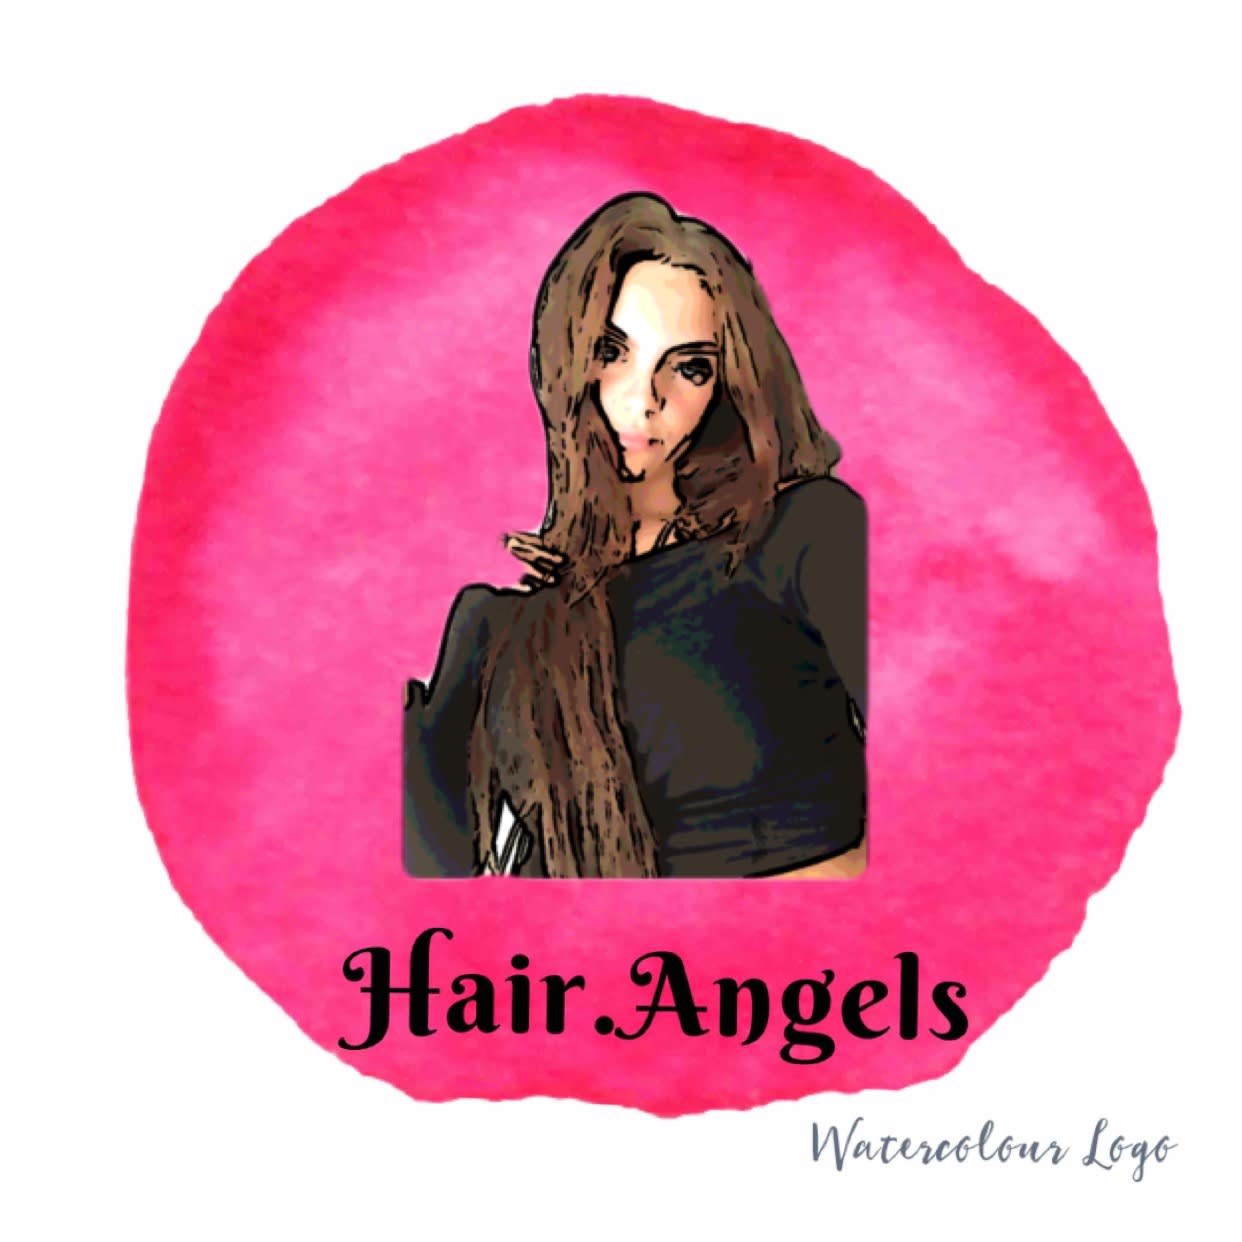 Hairangels